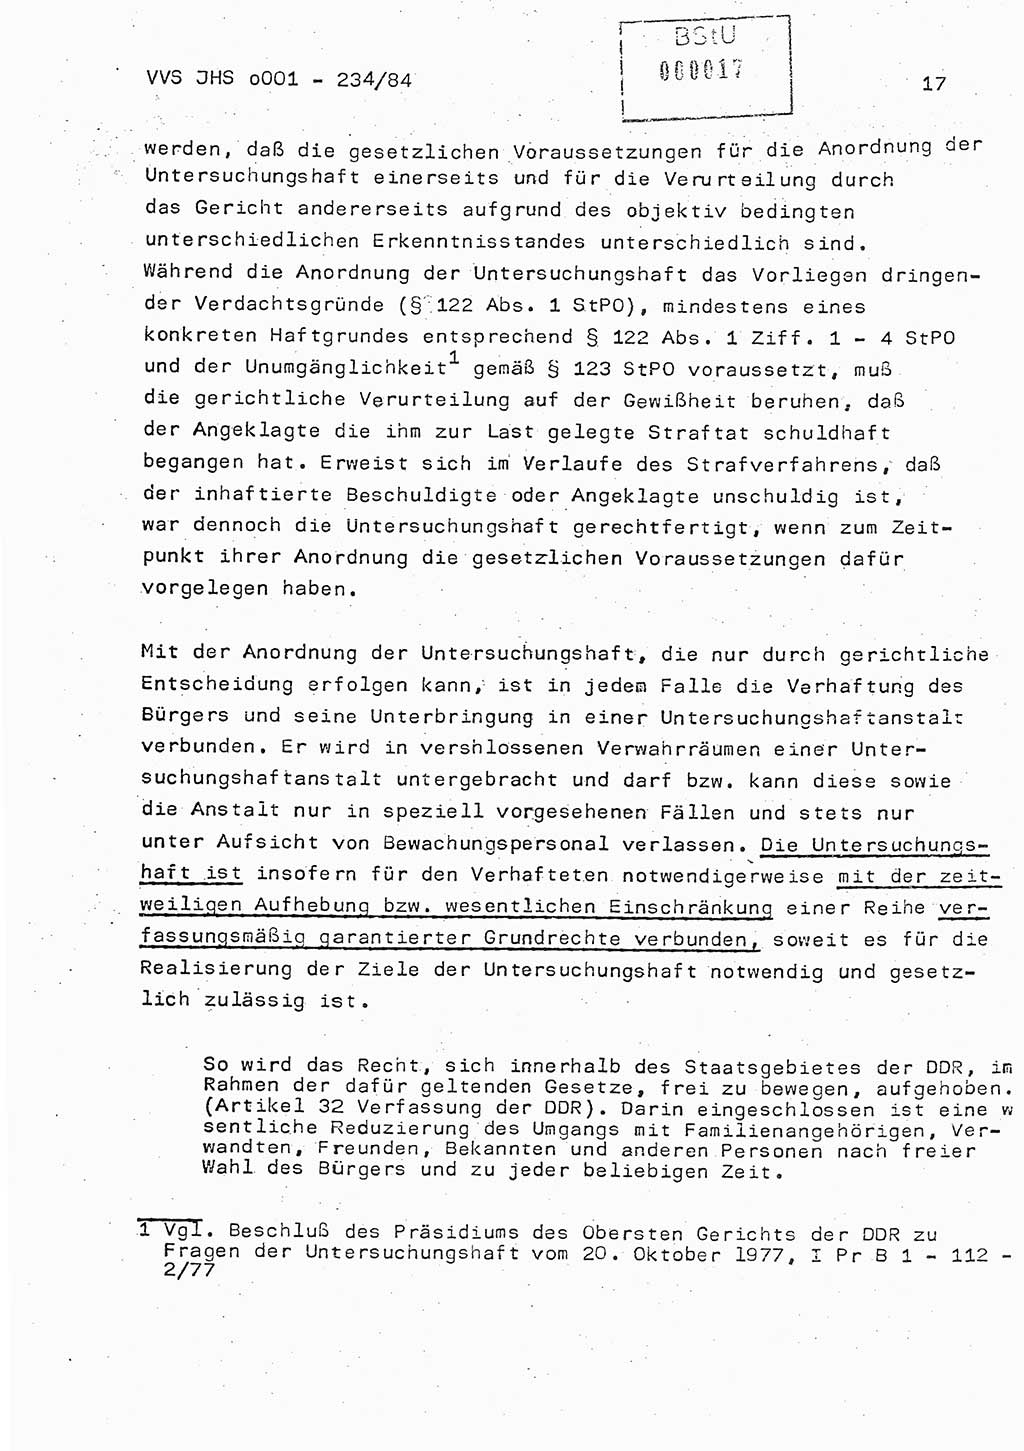 Dissertation Oberst Siegfried Rataizick (Abt. ⅩⅣ), Oberstleutnant Volkmar Heinz (Abt. ⅩⅣ), Oberstleutnant Werner Stein (HA Ⅸ), Hauptmann Heinz Conrad (JHS), Ministerium für Staatssicherheit (MfS) [Deutsche Demokratische Republik (DDR)], Juristische Hochschule (JHS), Vertrauliche Verschlußsache (VVS) o001-234/84, Potsdam 1984, Seite 17 (Diss. MfS DDR JHS VVS o001-234/84 1984, S. 17)